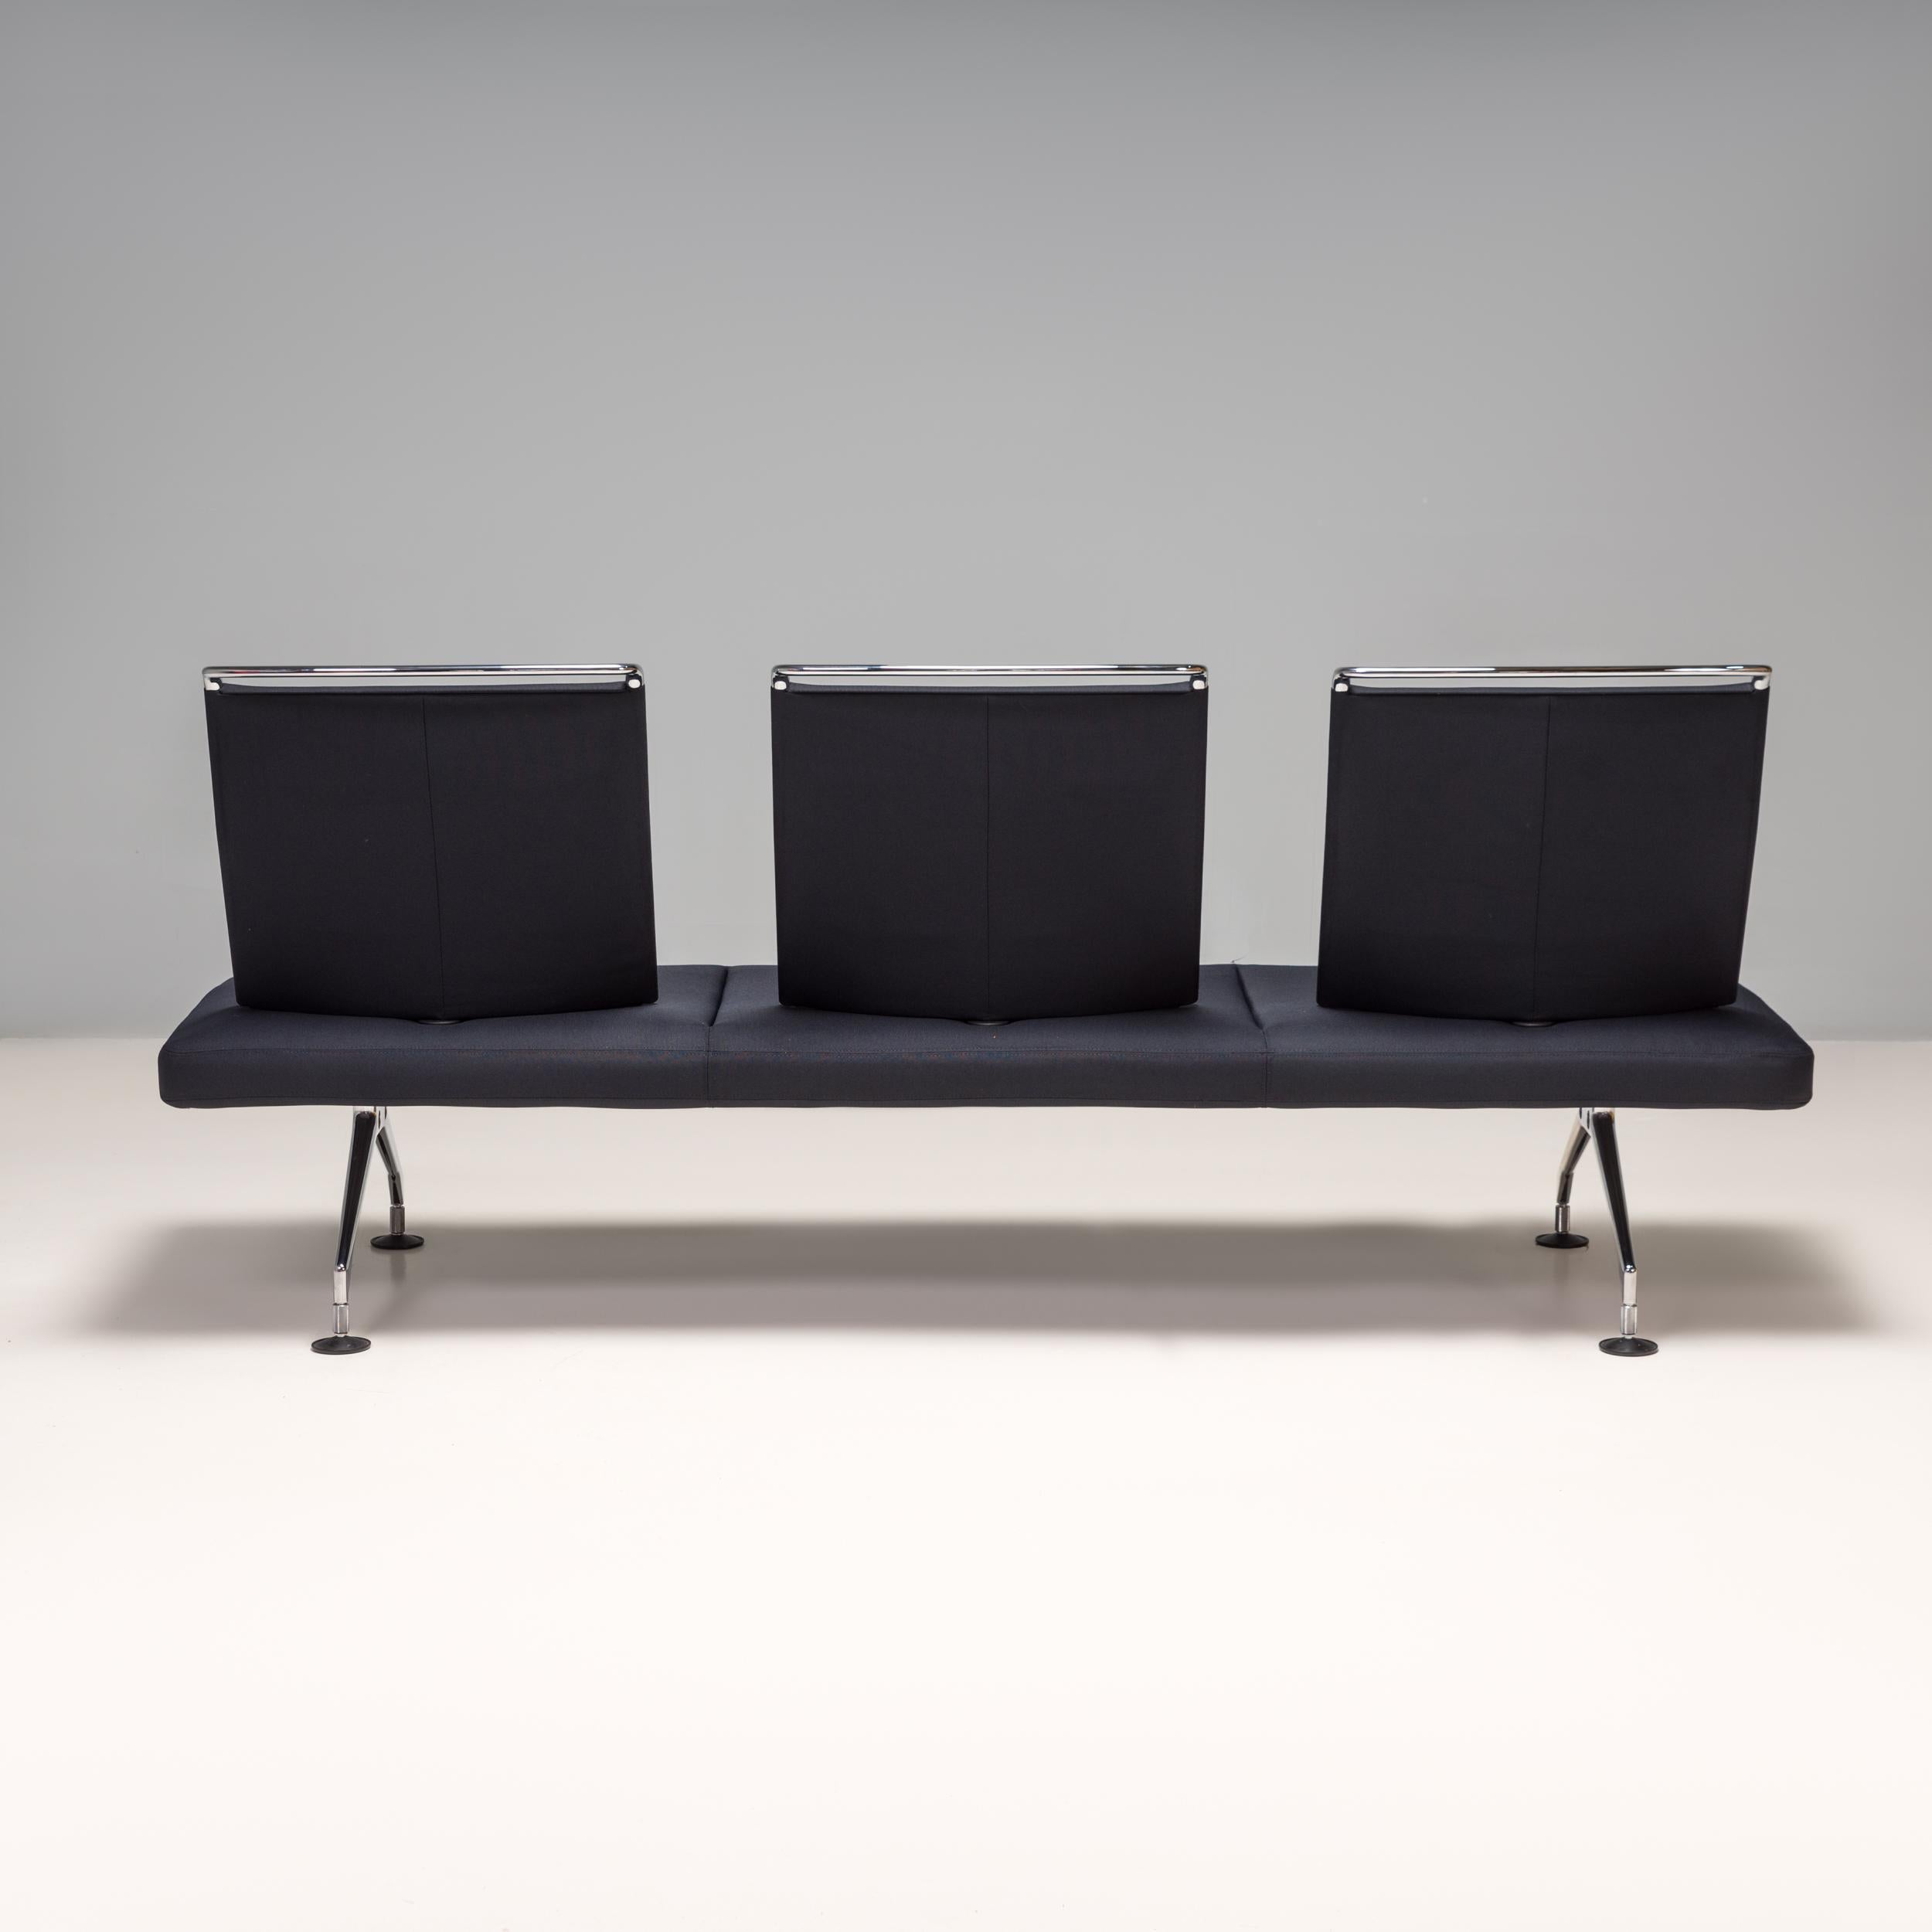 German Vitra by Antonio Citterio Area Black Fabric Three-Seater Sofa, 2003